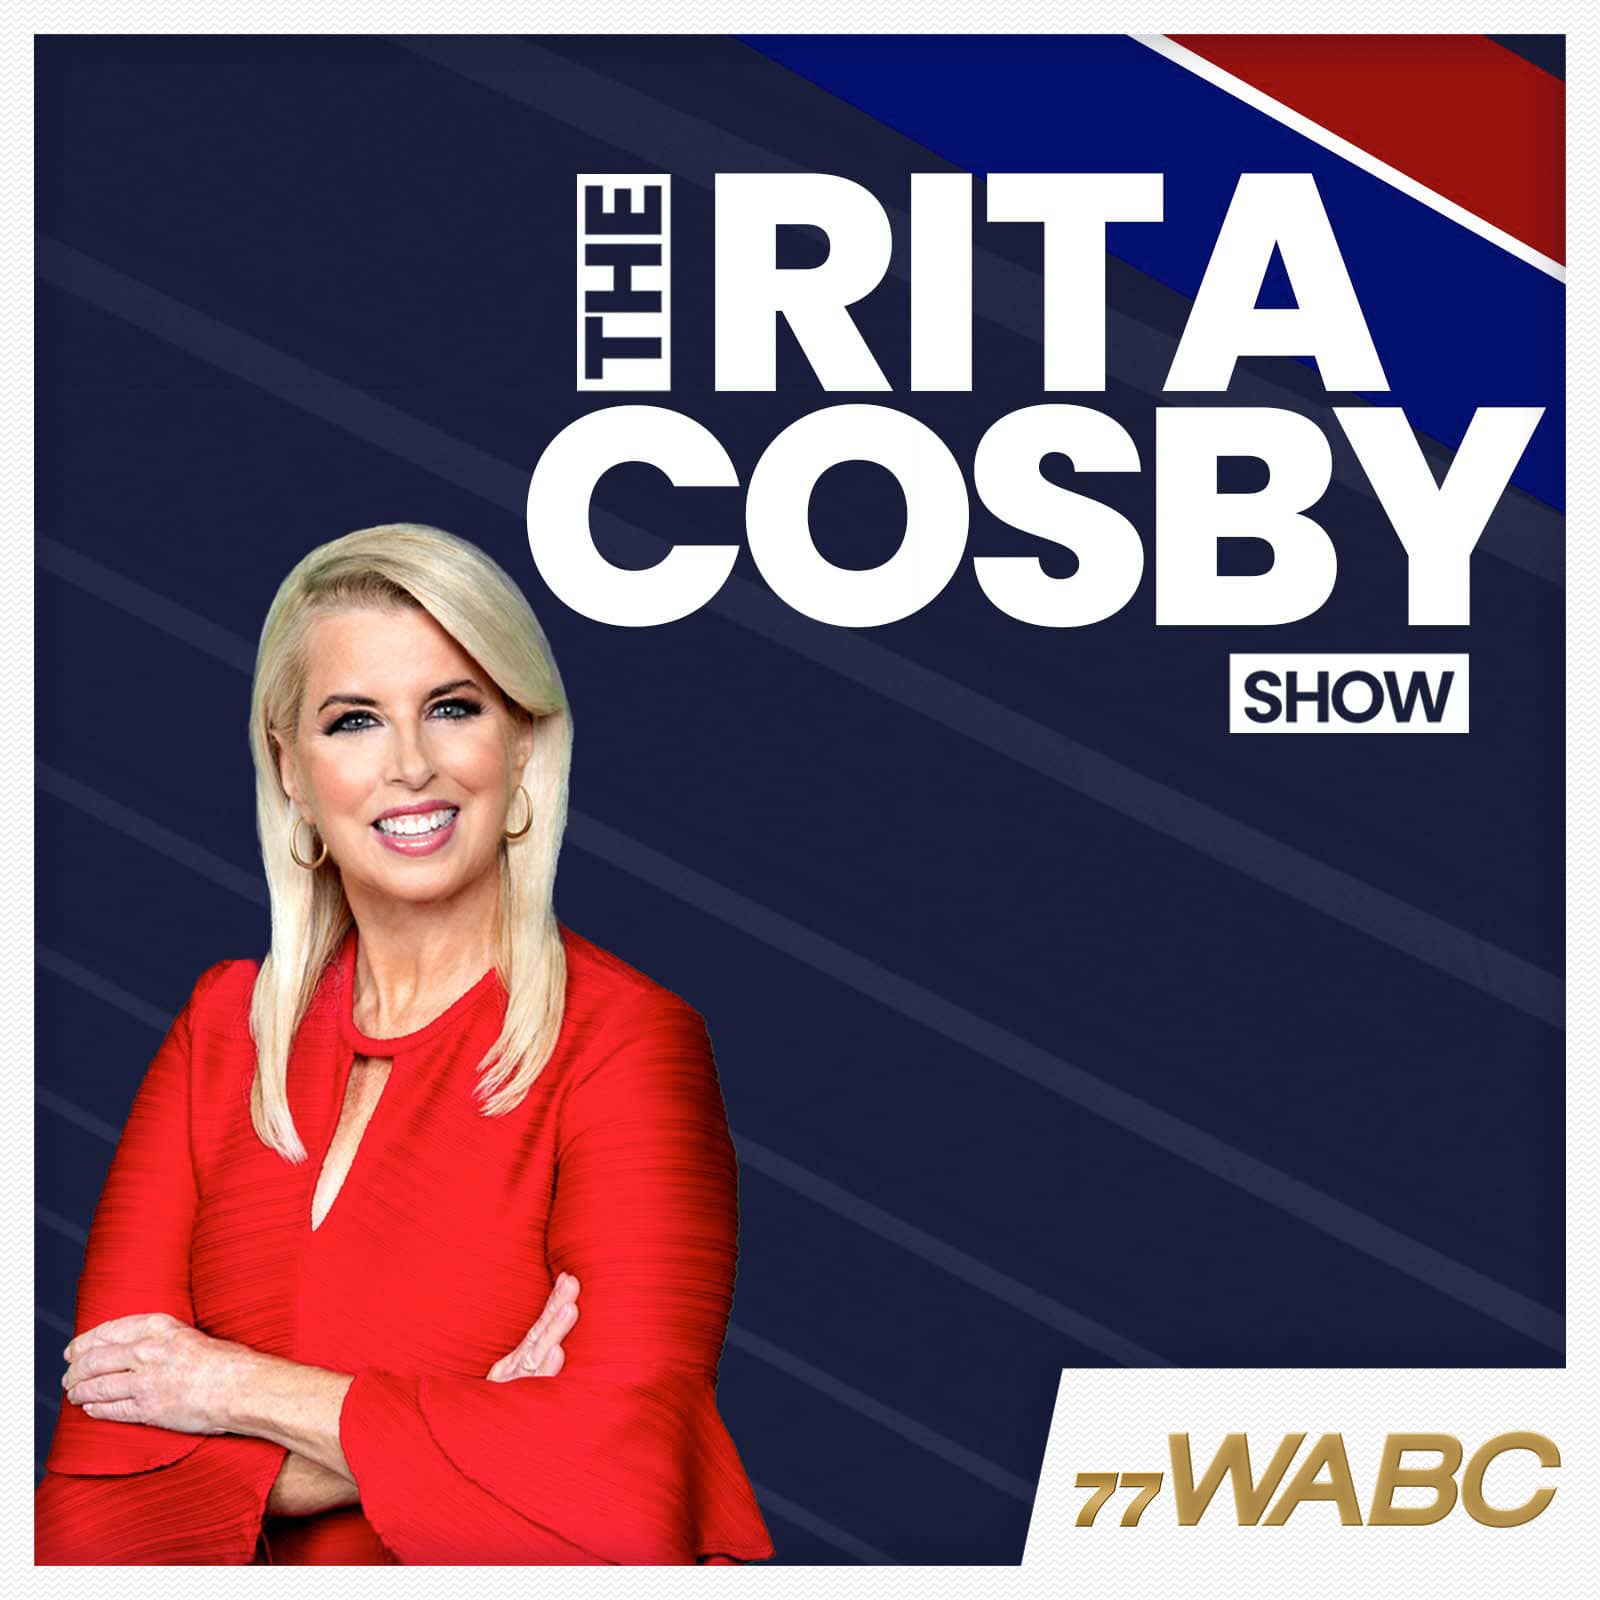 rita-cosby-podcast-new-logo-347